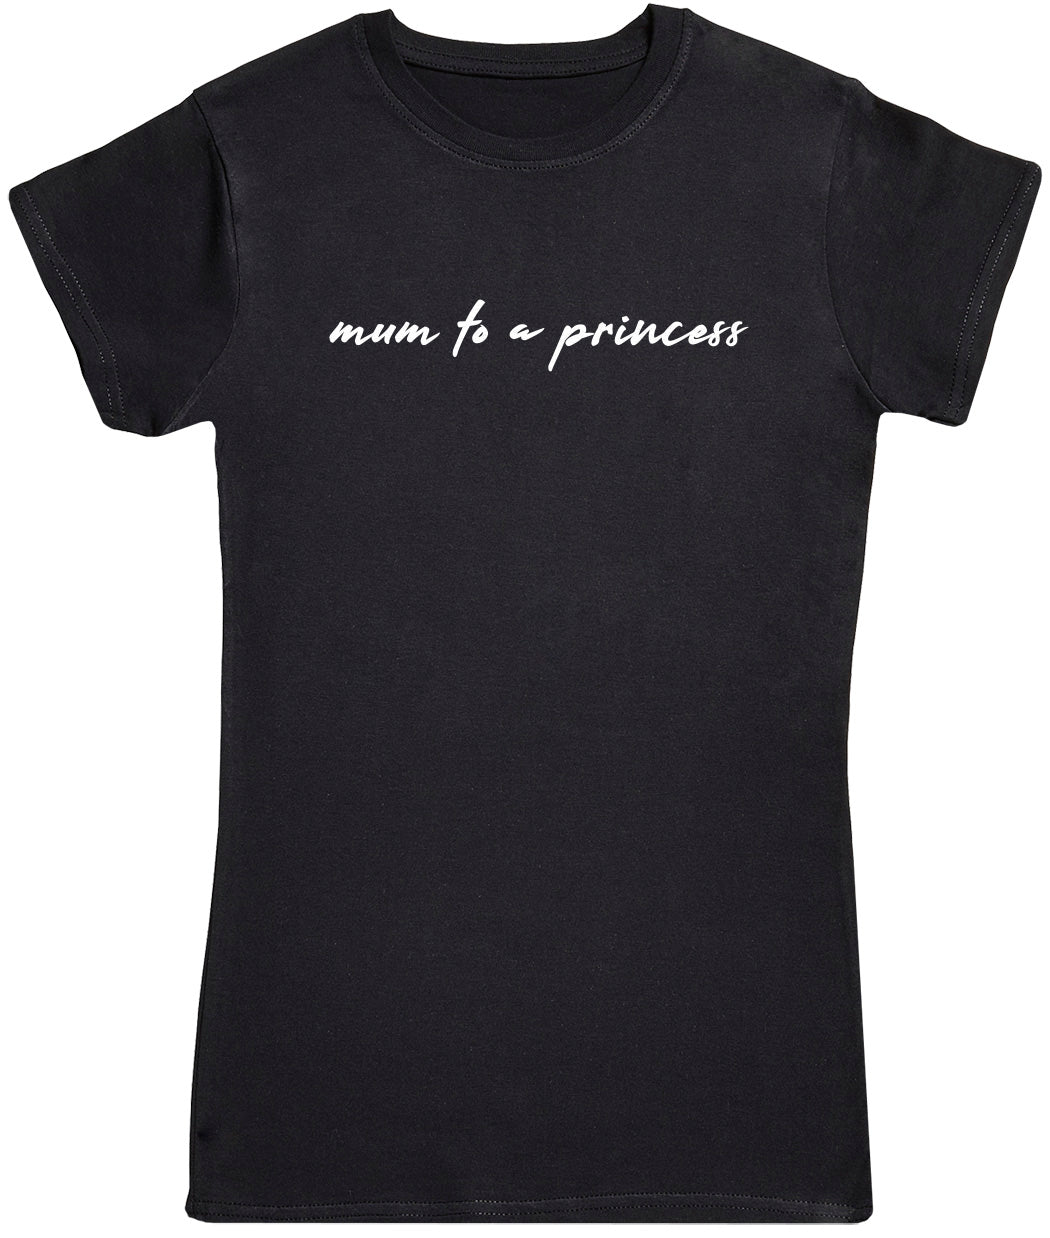 Mum To A Princess - Womens T-shirt - Mum T-Shirt